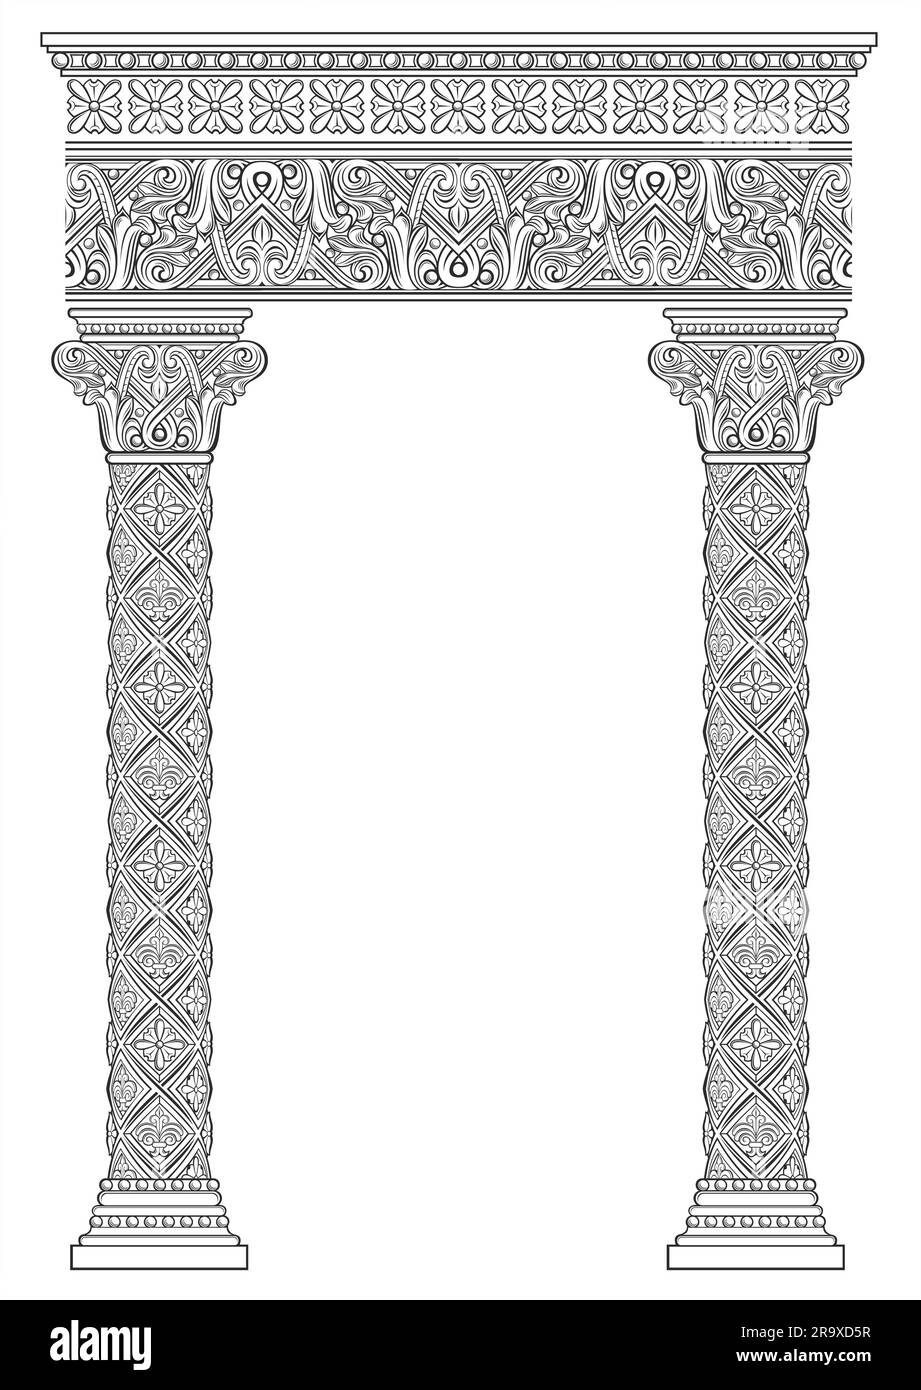 Vettore. Struttura dell'arco architettonico gotico veneziano o galleria Illustrazione Vettoriale